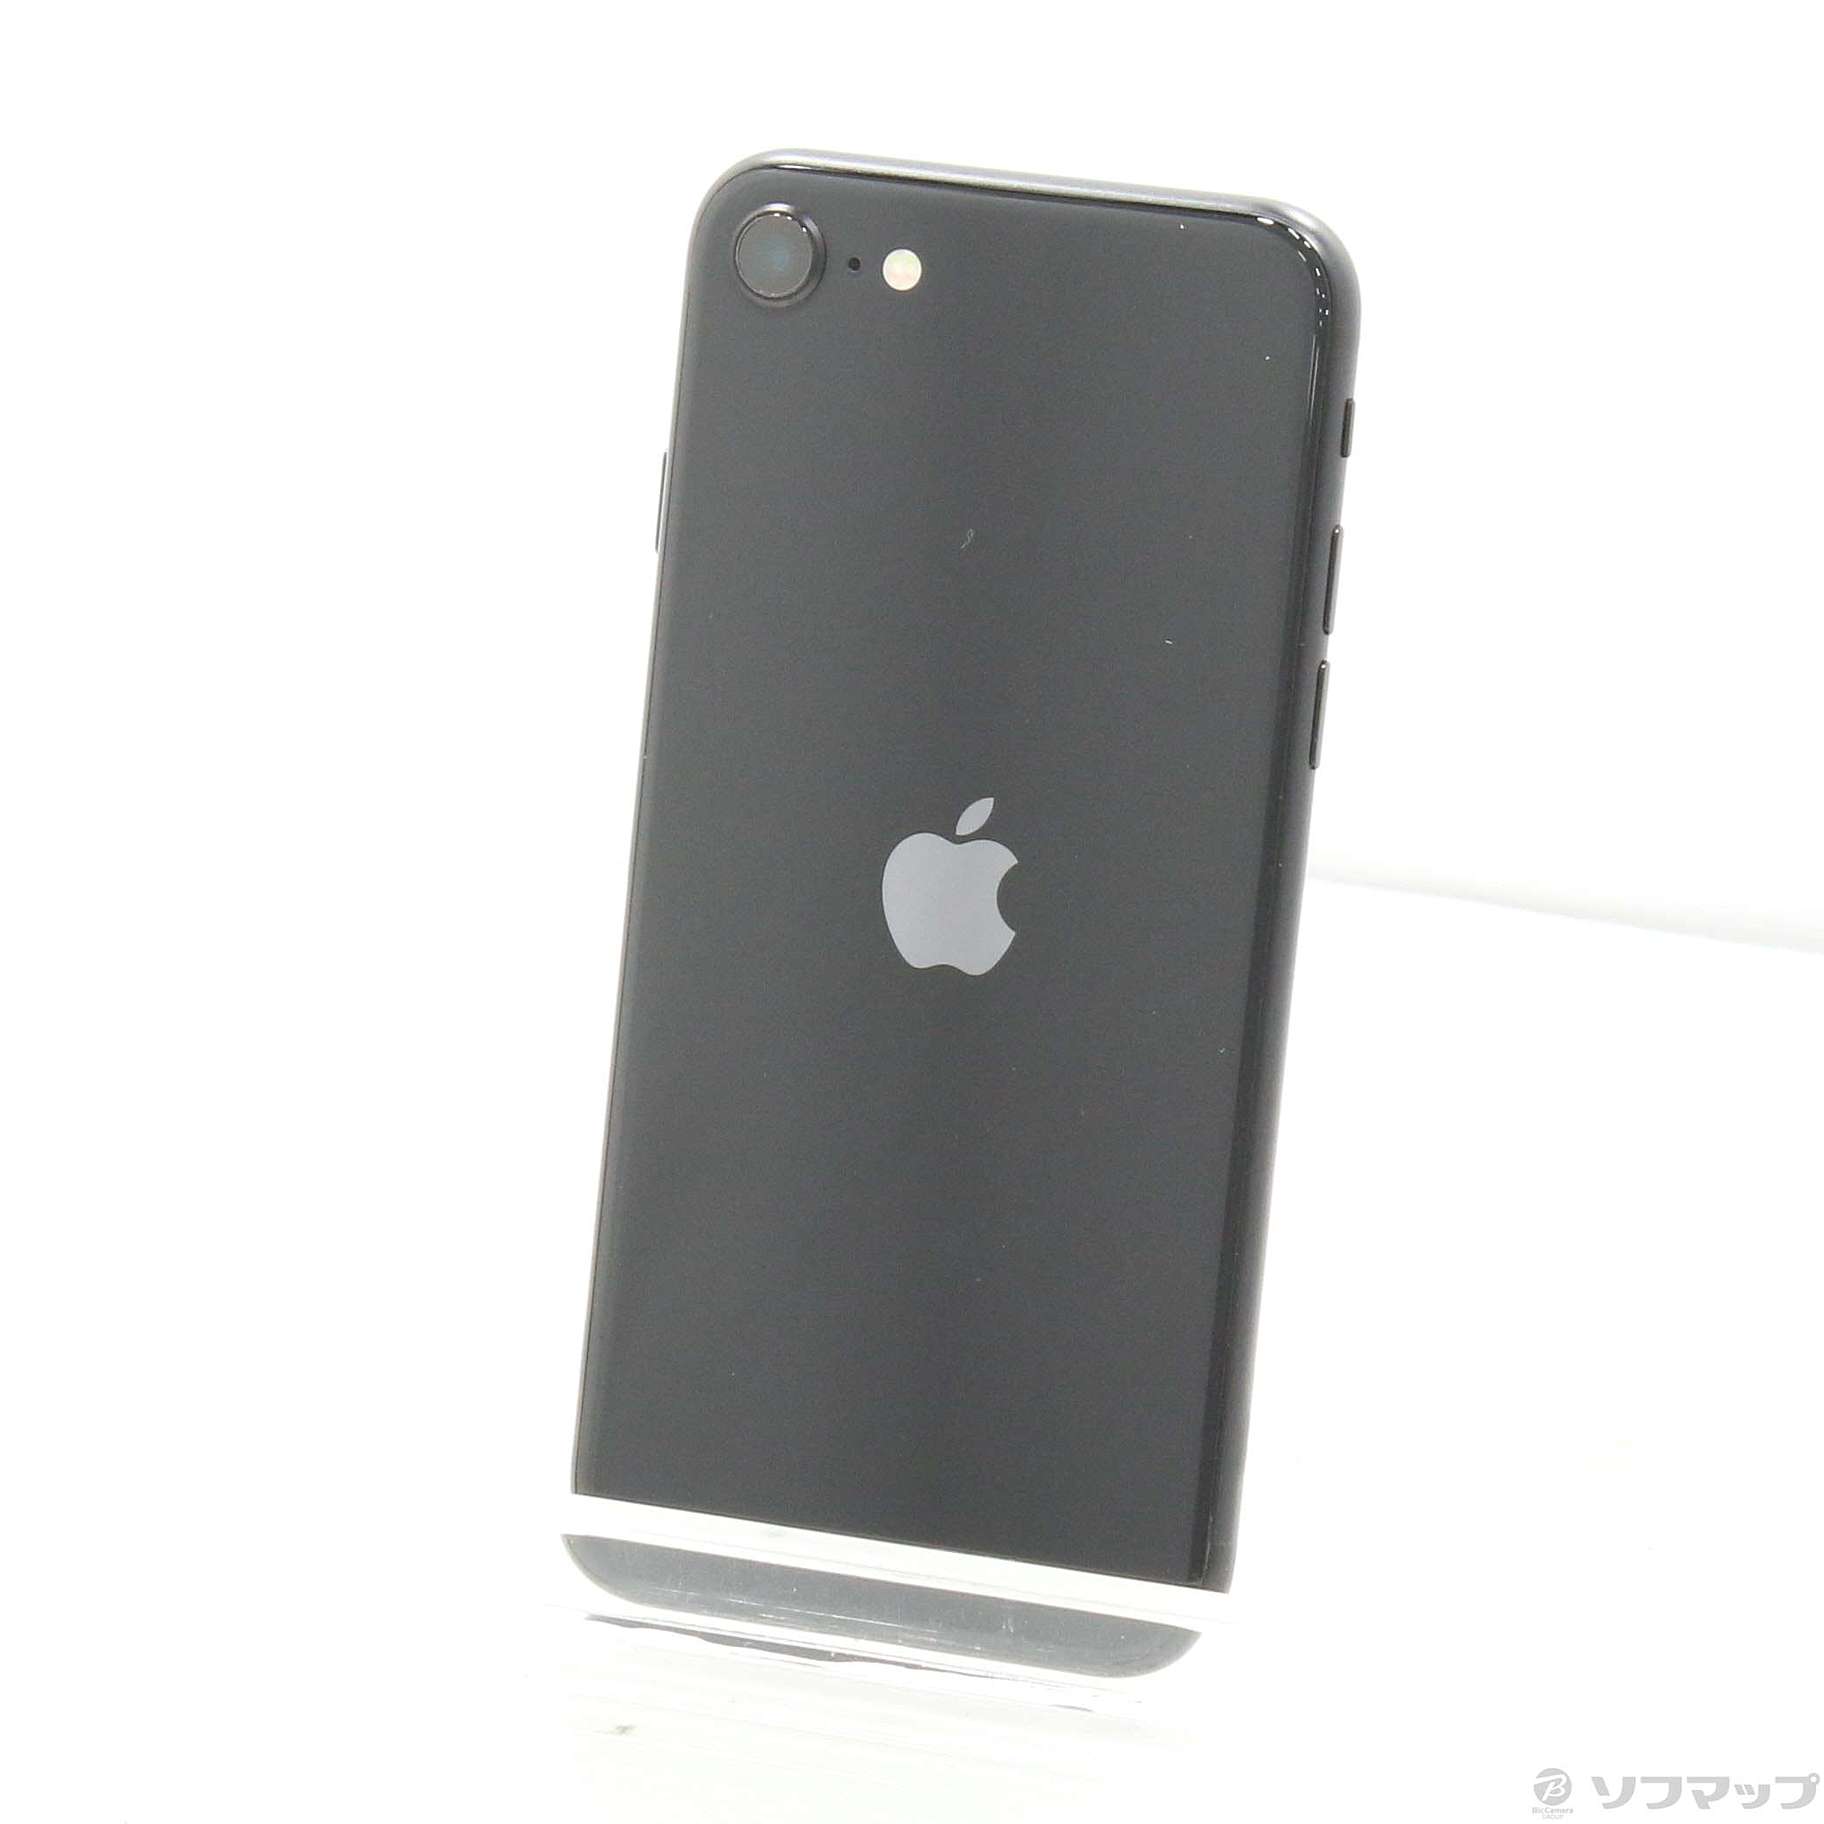 Apple iPhone SE 第2世代 64GB ブラック MHGP3J/A-